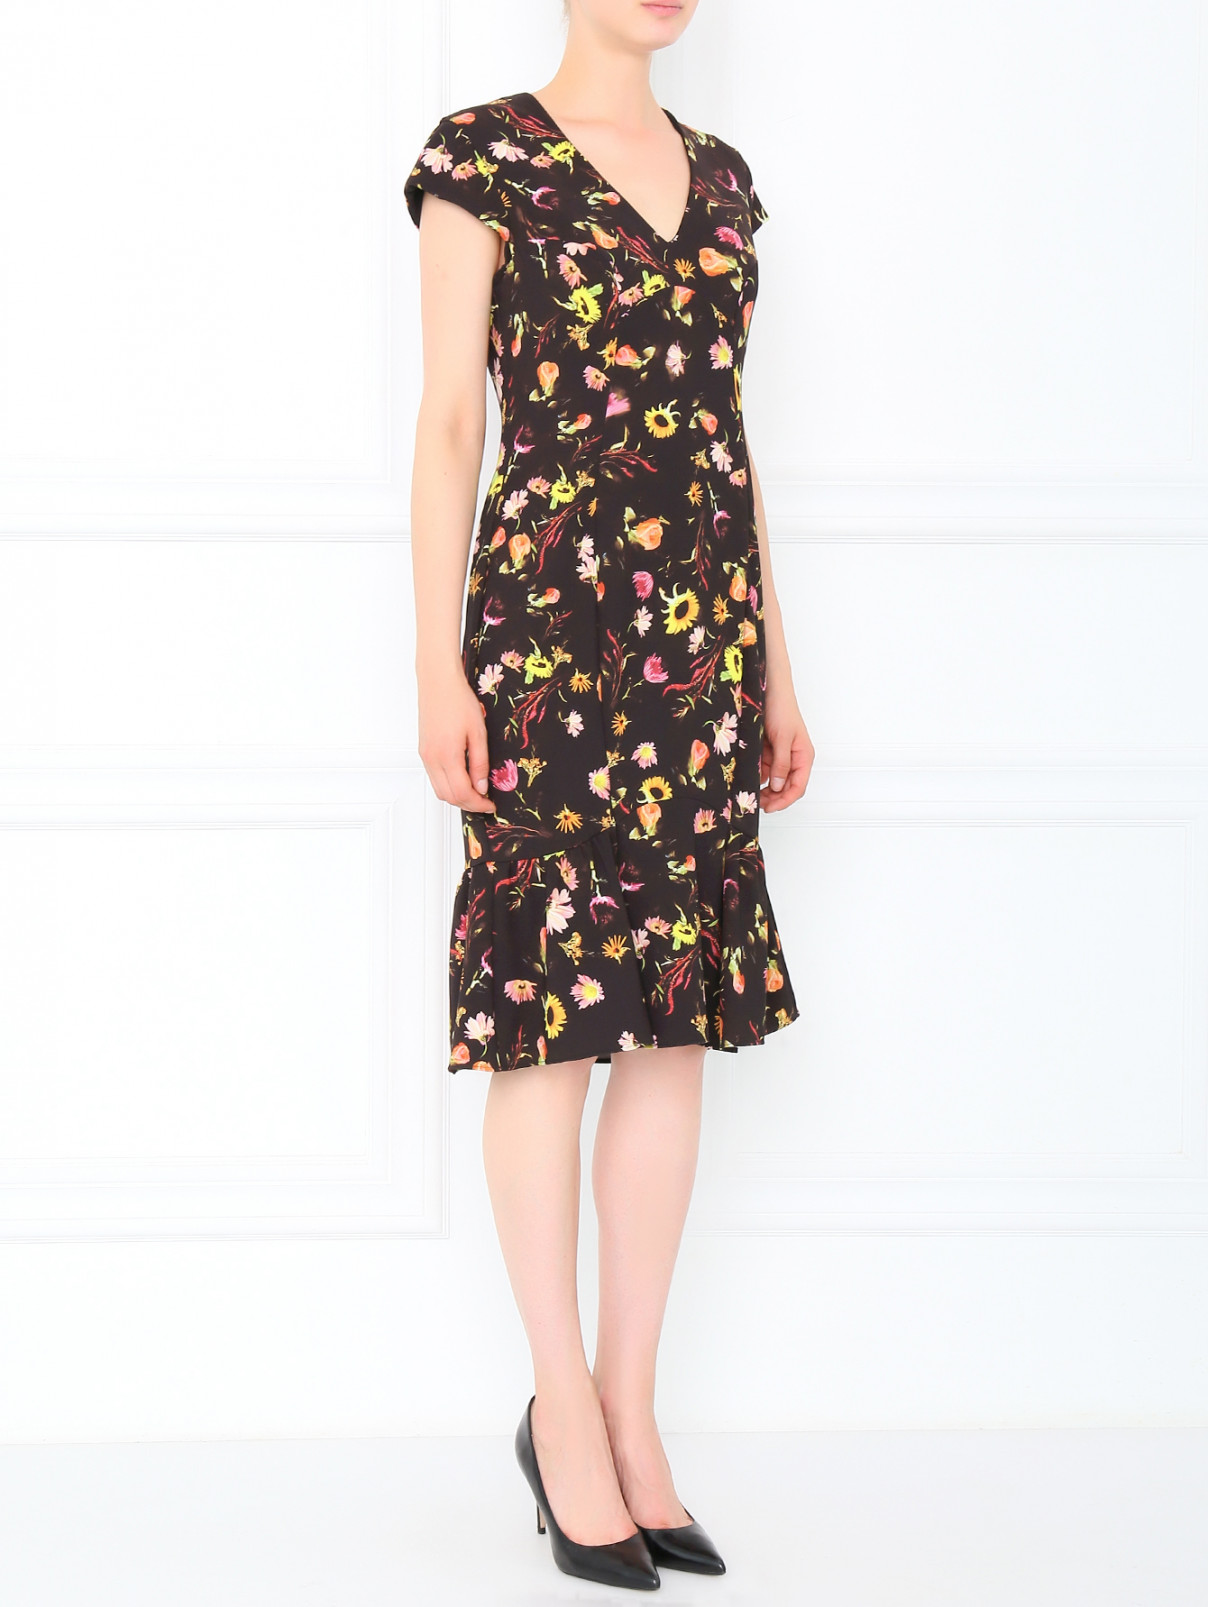 Платье с асимметричным низом и цветочным принтом Moschino Cheap&Chic  –  Модель Общий вид  – Цвет:  Черный